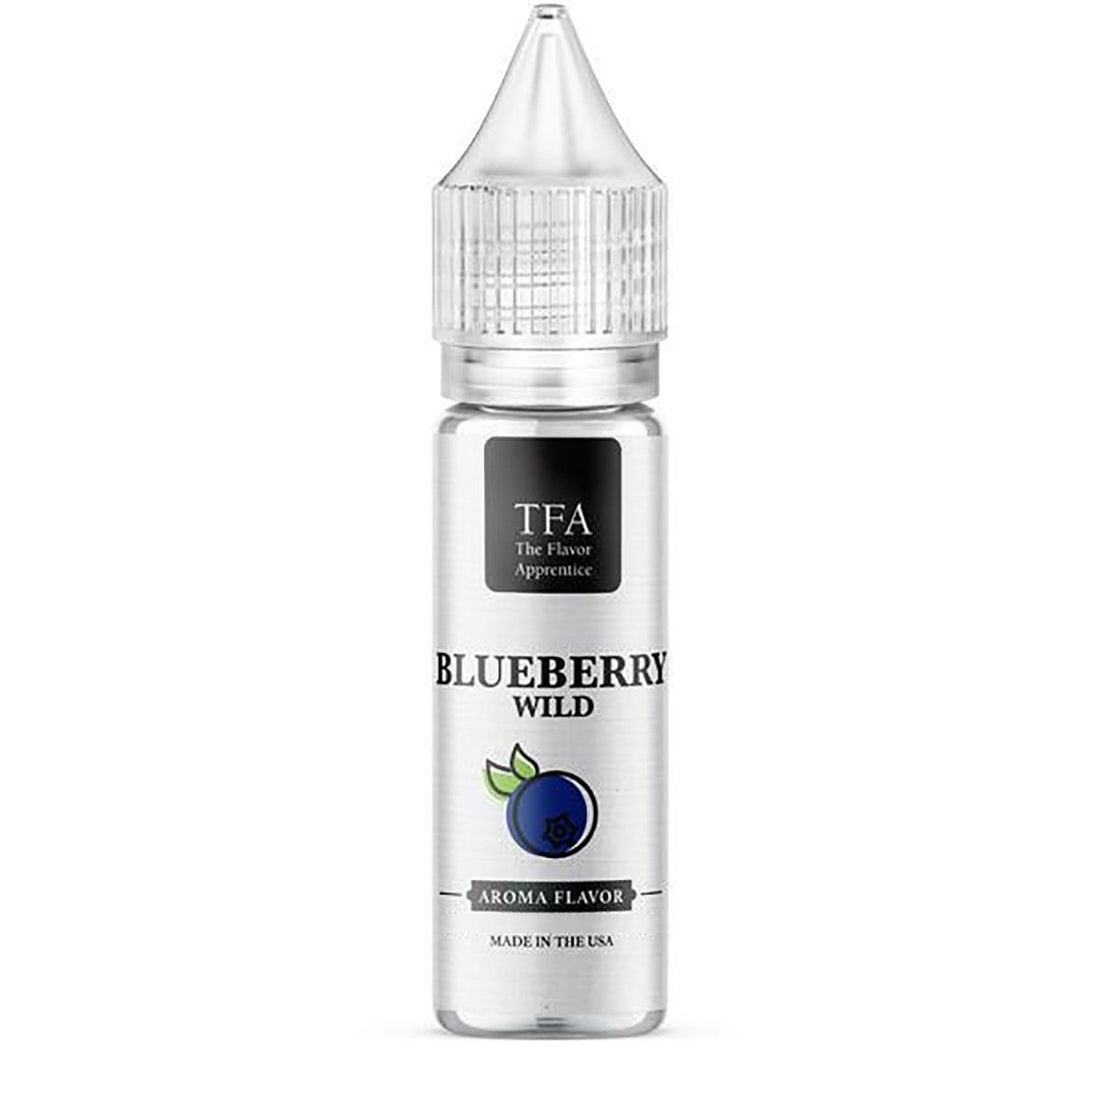 Wild Blueberry TFA - Aroma - TFA | AR-TFA-WBL